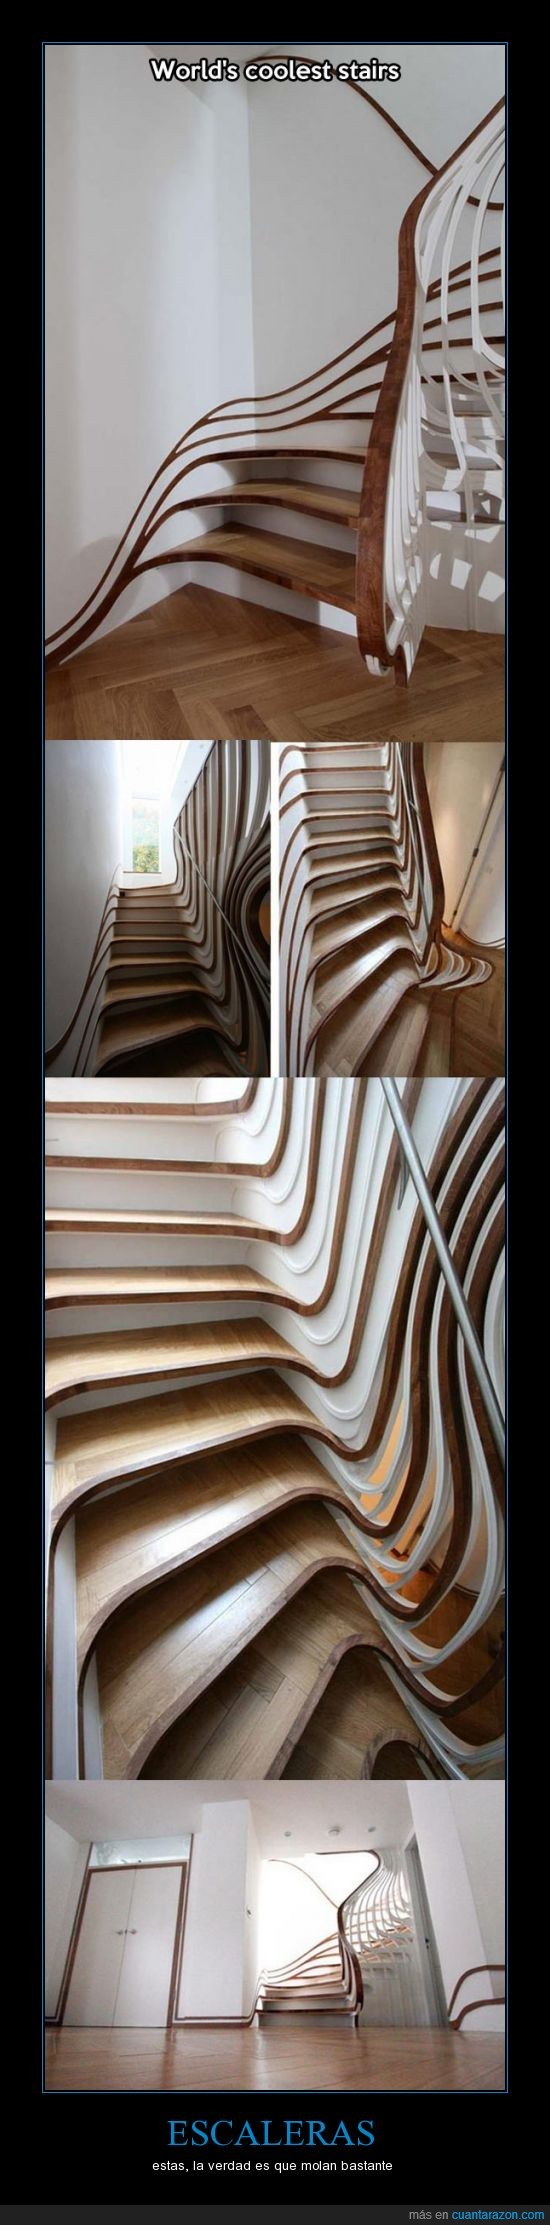 escaleras,Salvador Dalí,derretido,molan mucho